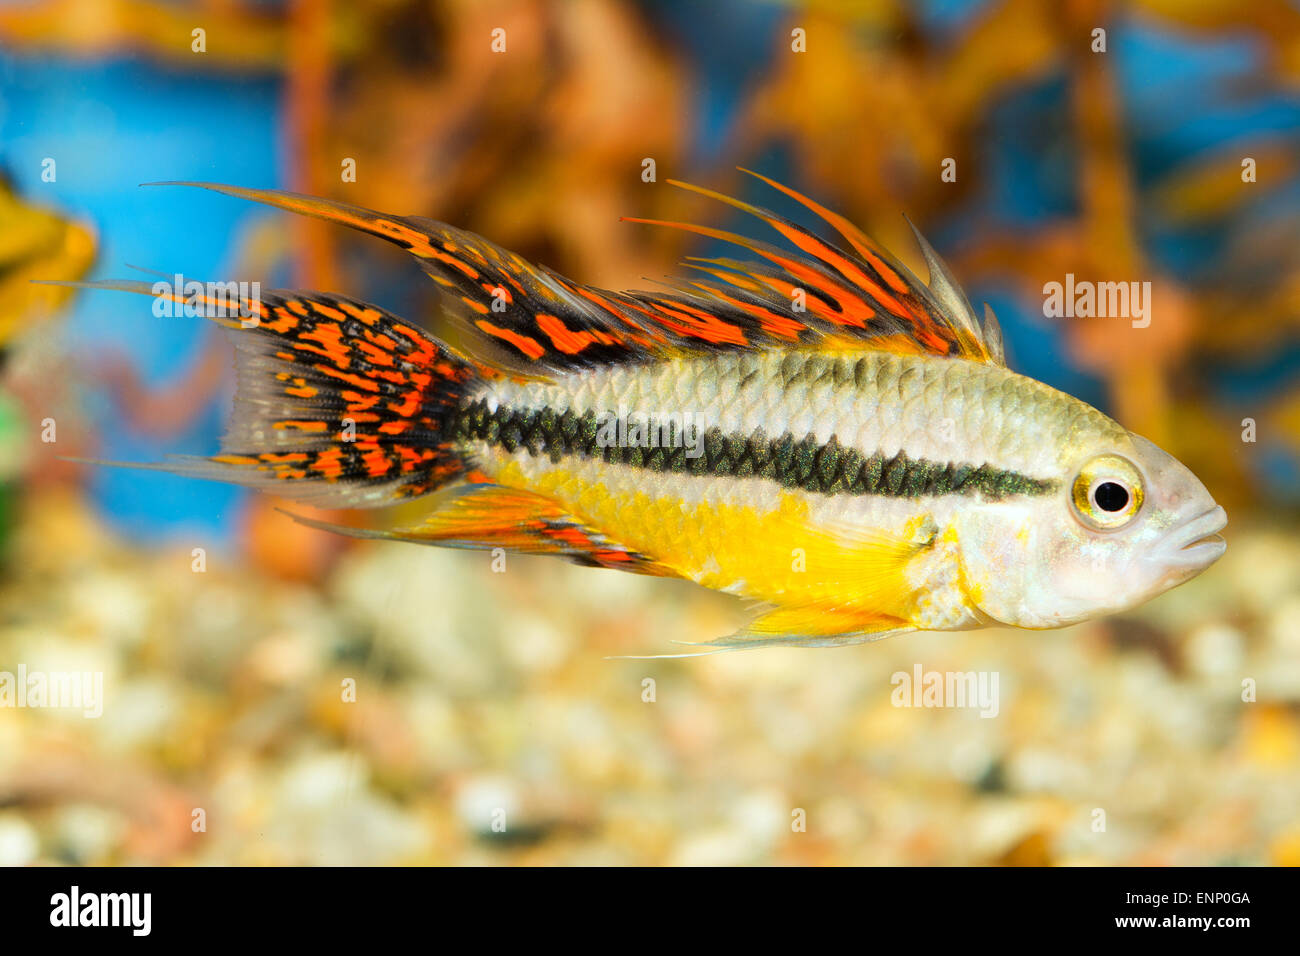 Aquarium cichlid fish from the genus Apistogramma. Stock Photo